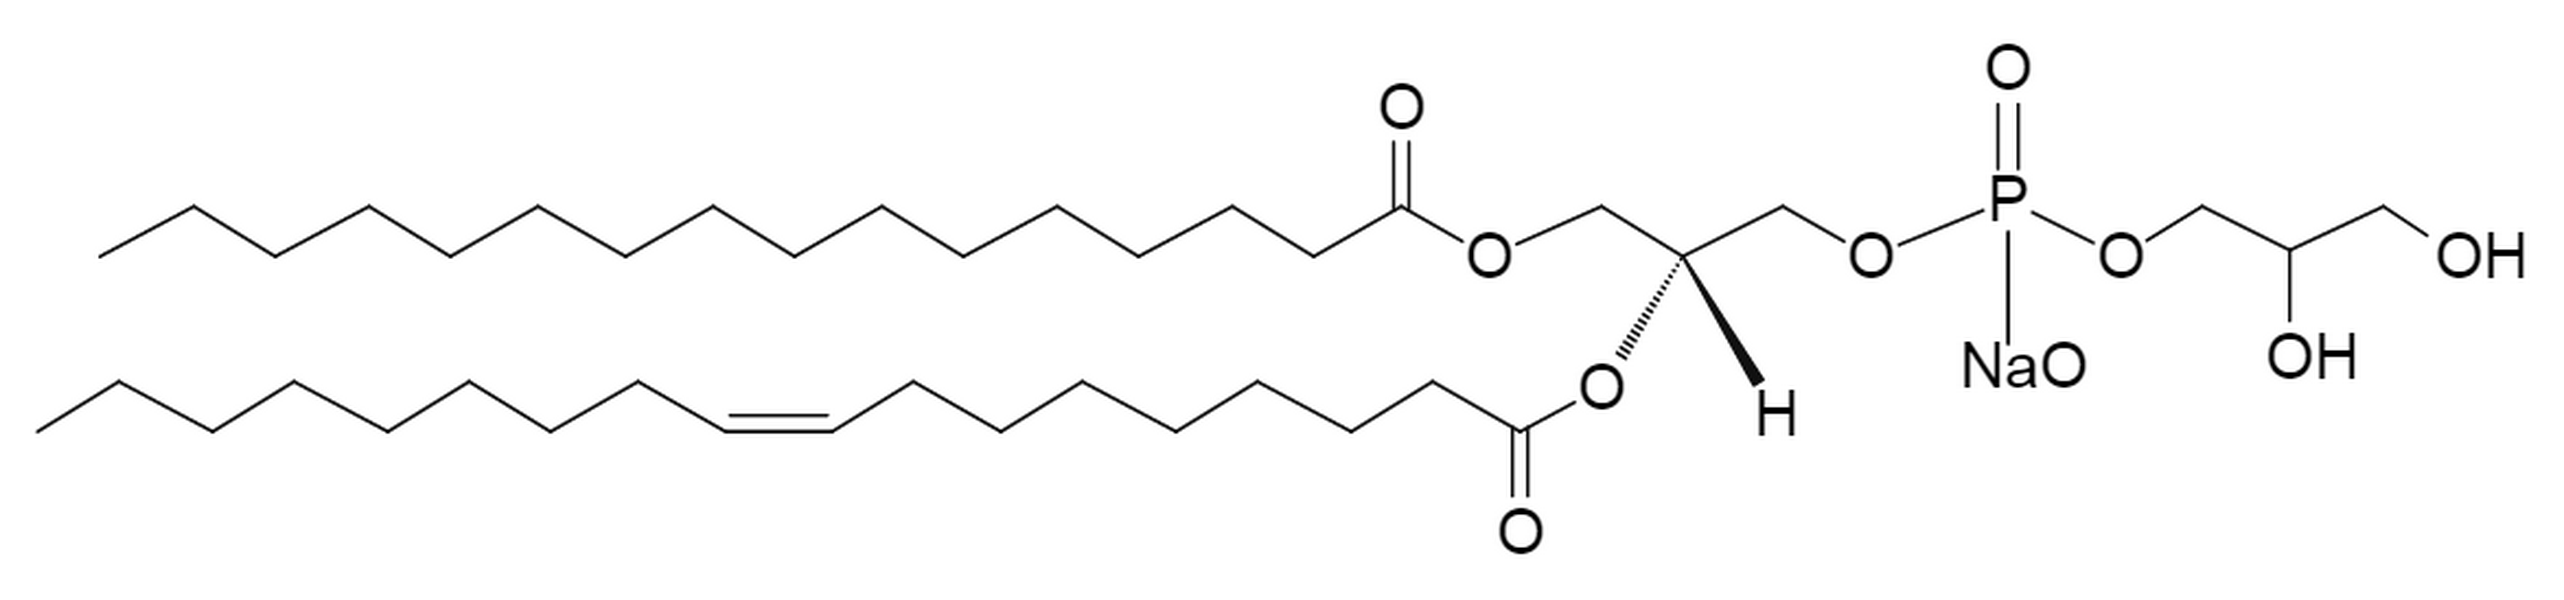 1-Palmitoyl-2-oleoyl-sn-glycero-3-phosphoglycerol